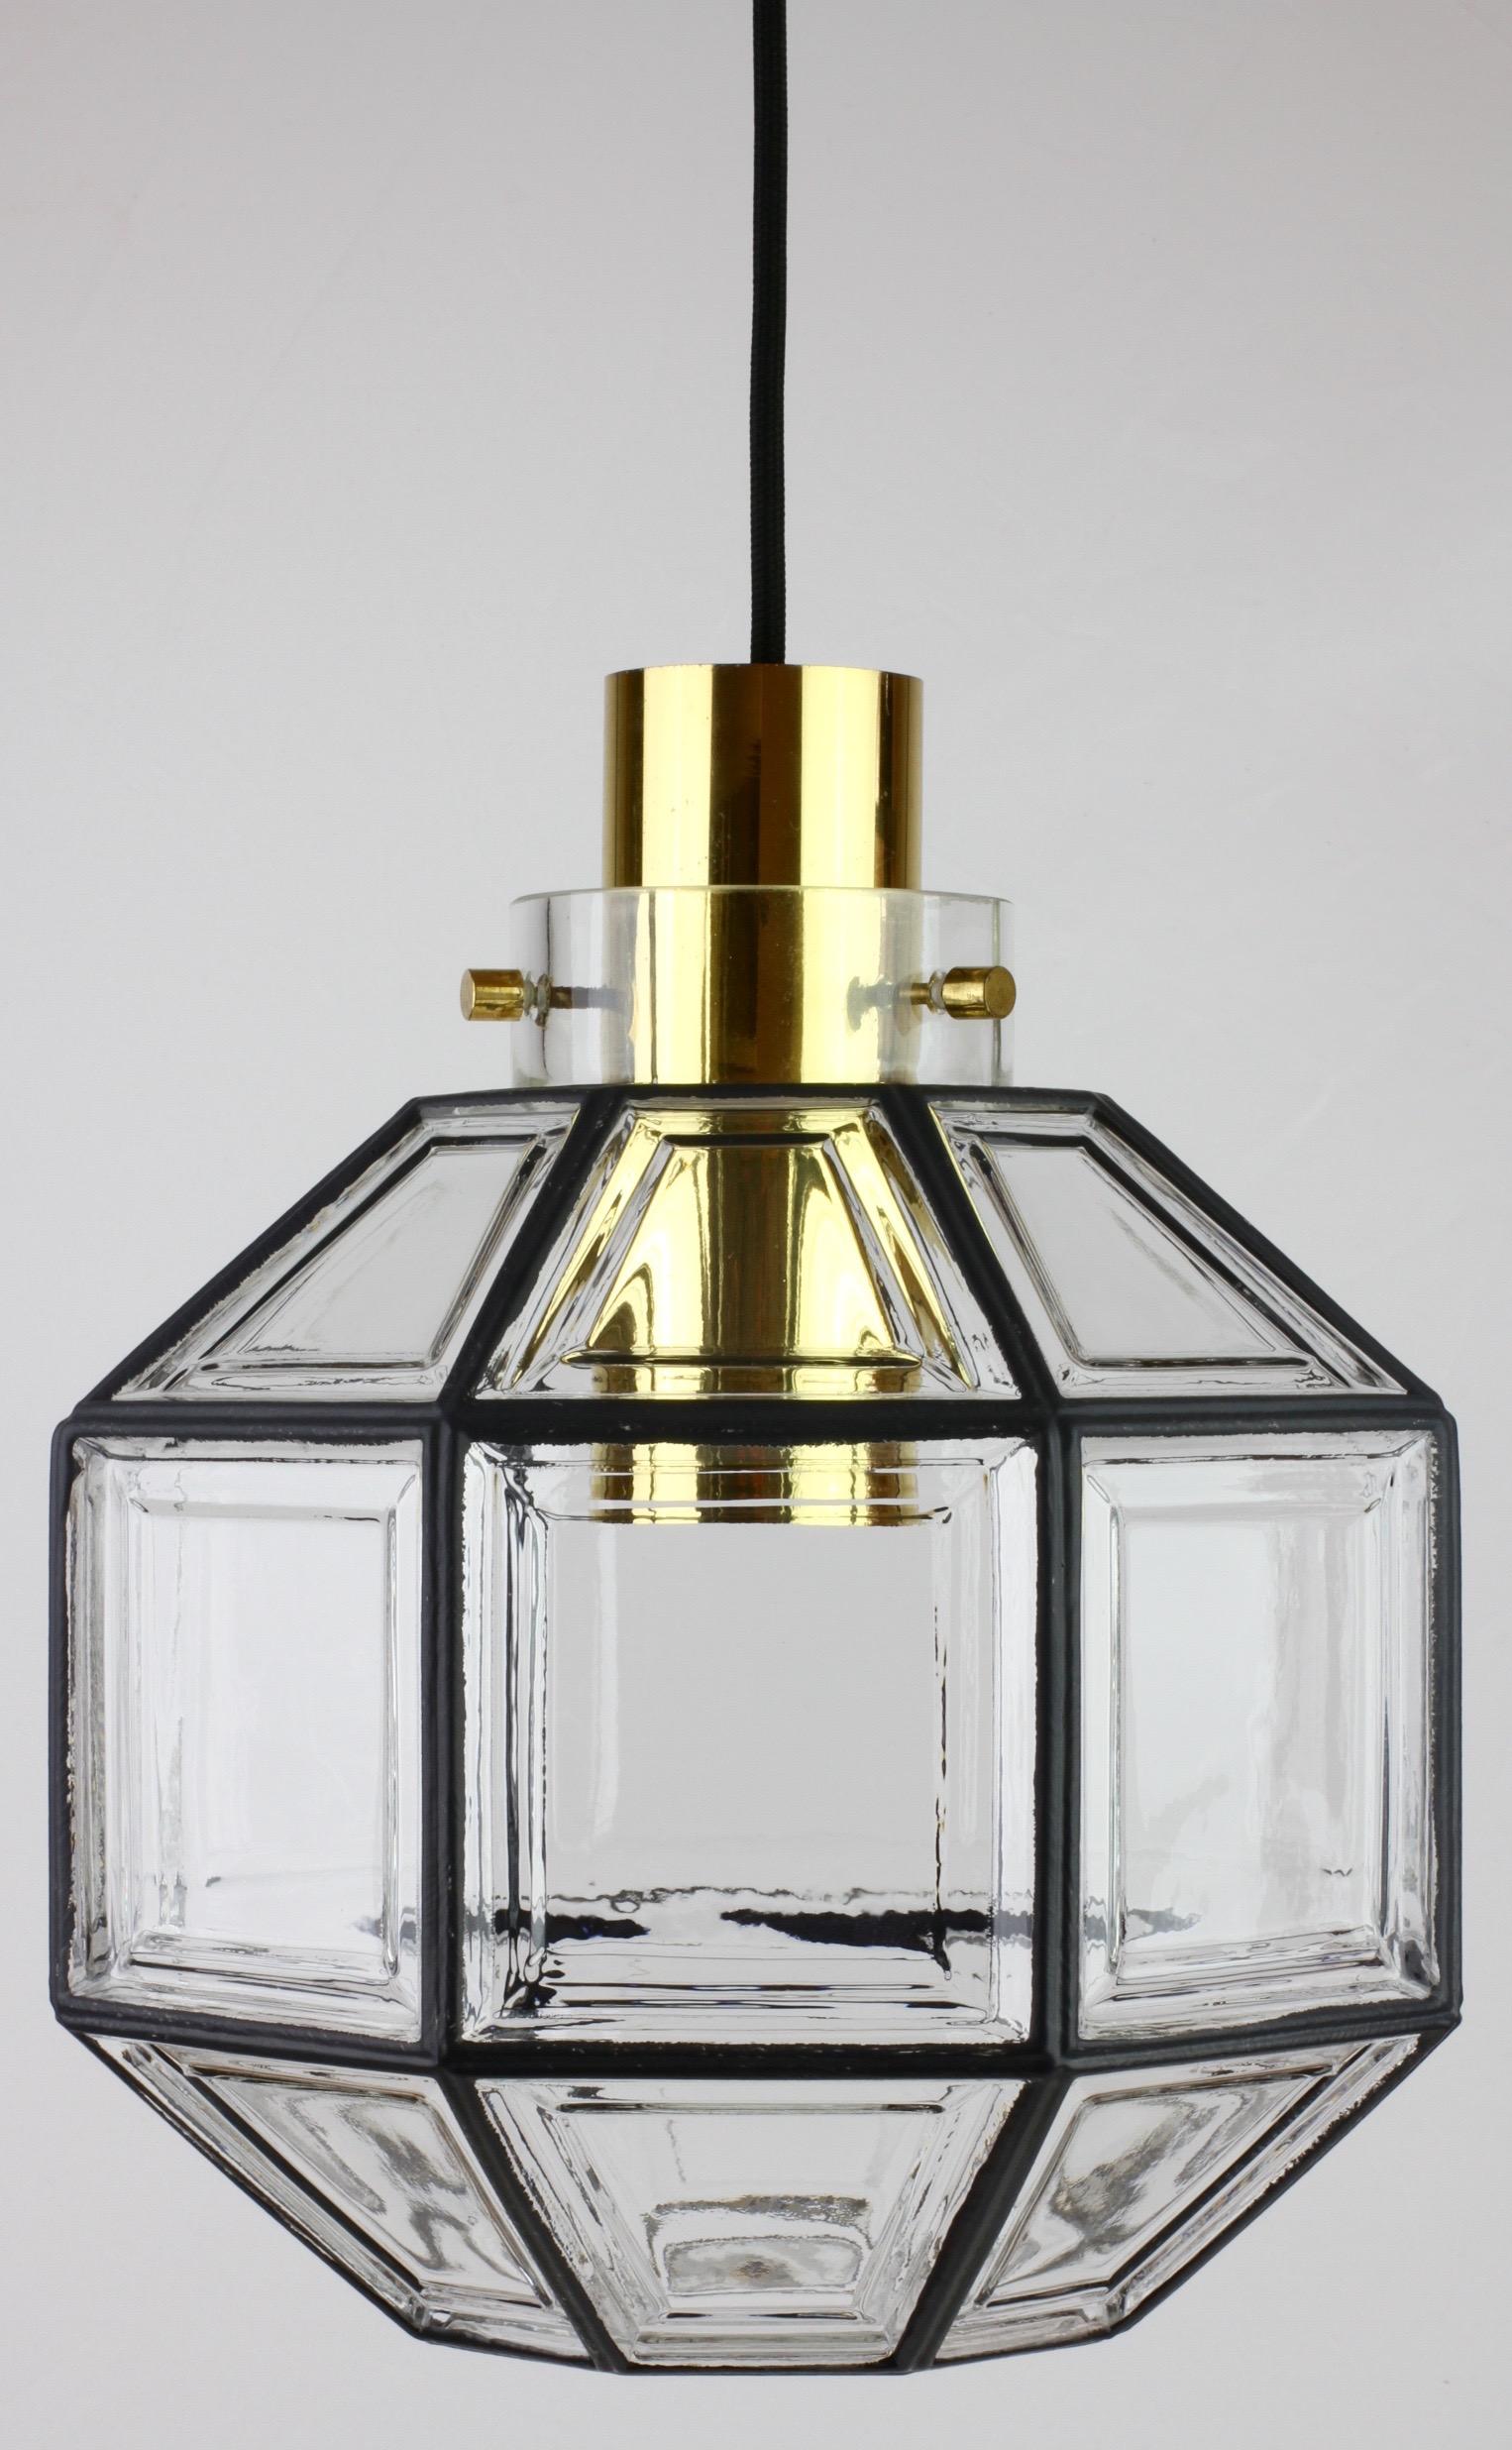 Ensemble de cinq lampes suspendues de style Mid-Century en verre transparent et laiton, de forme octogonale et à multiples facettes, magnifiquement conçues et fabriquées. Ces grands luminaires minimalistes, de style Art déco contemporain et